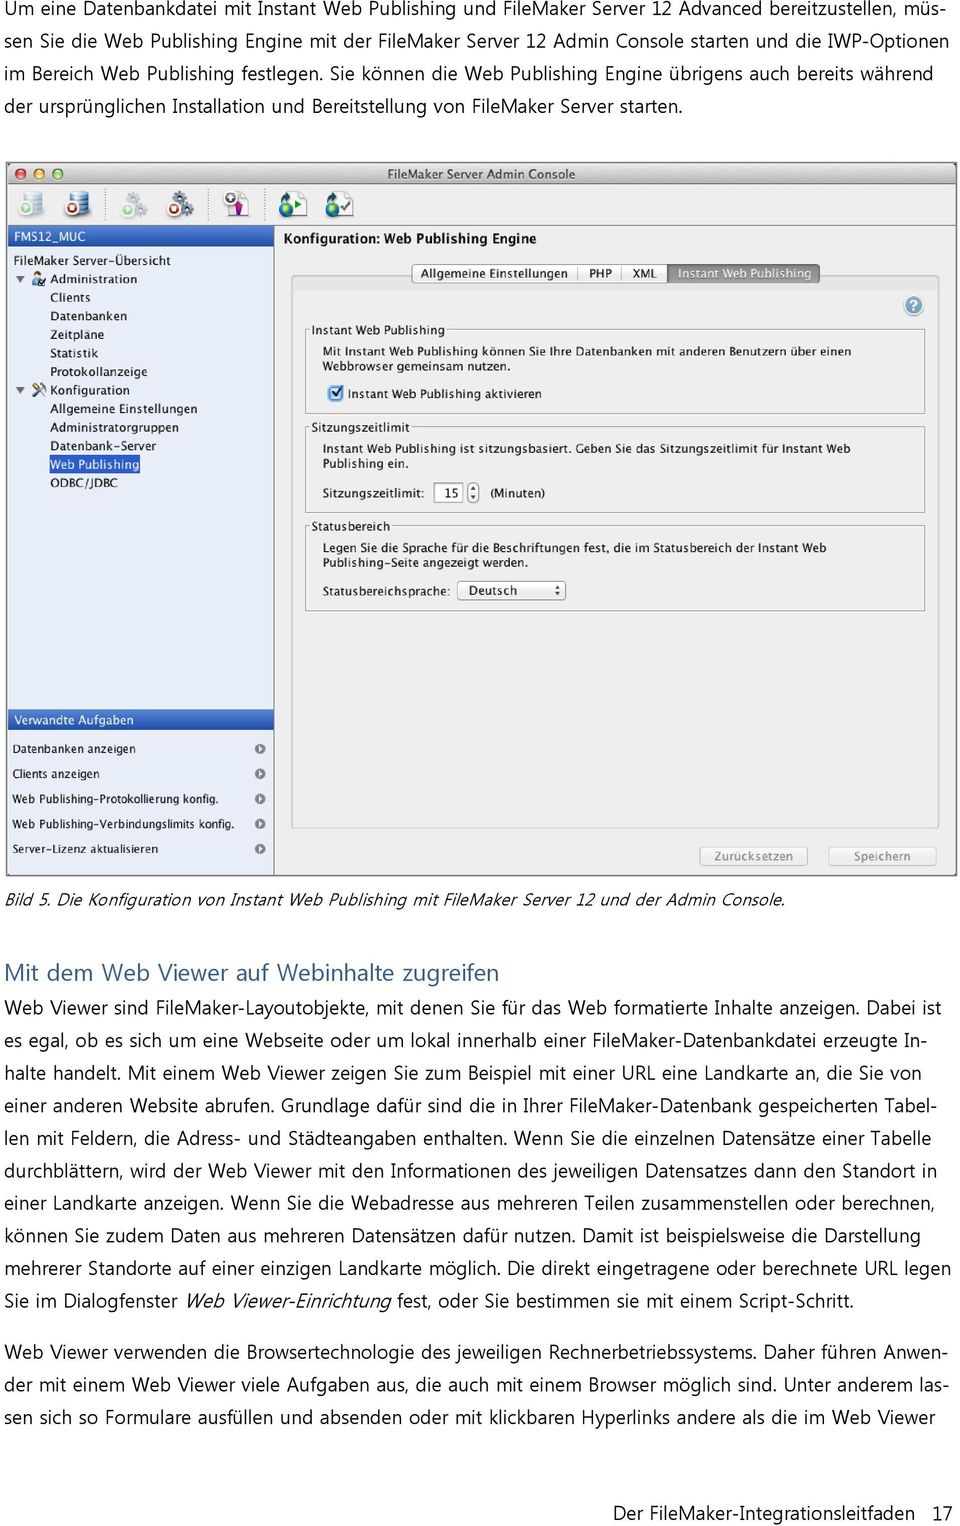 Bild 5. Die Konfiguration von Instant Web Publishing mit FileMaker Server 12 und der Admin Console.